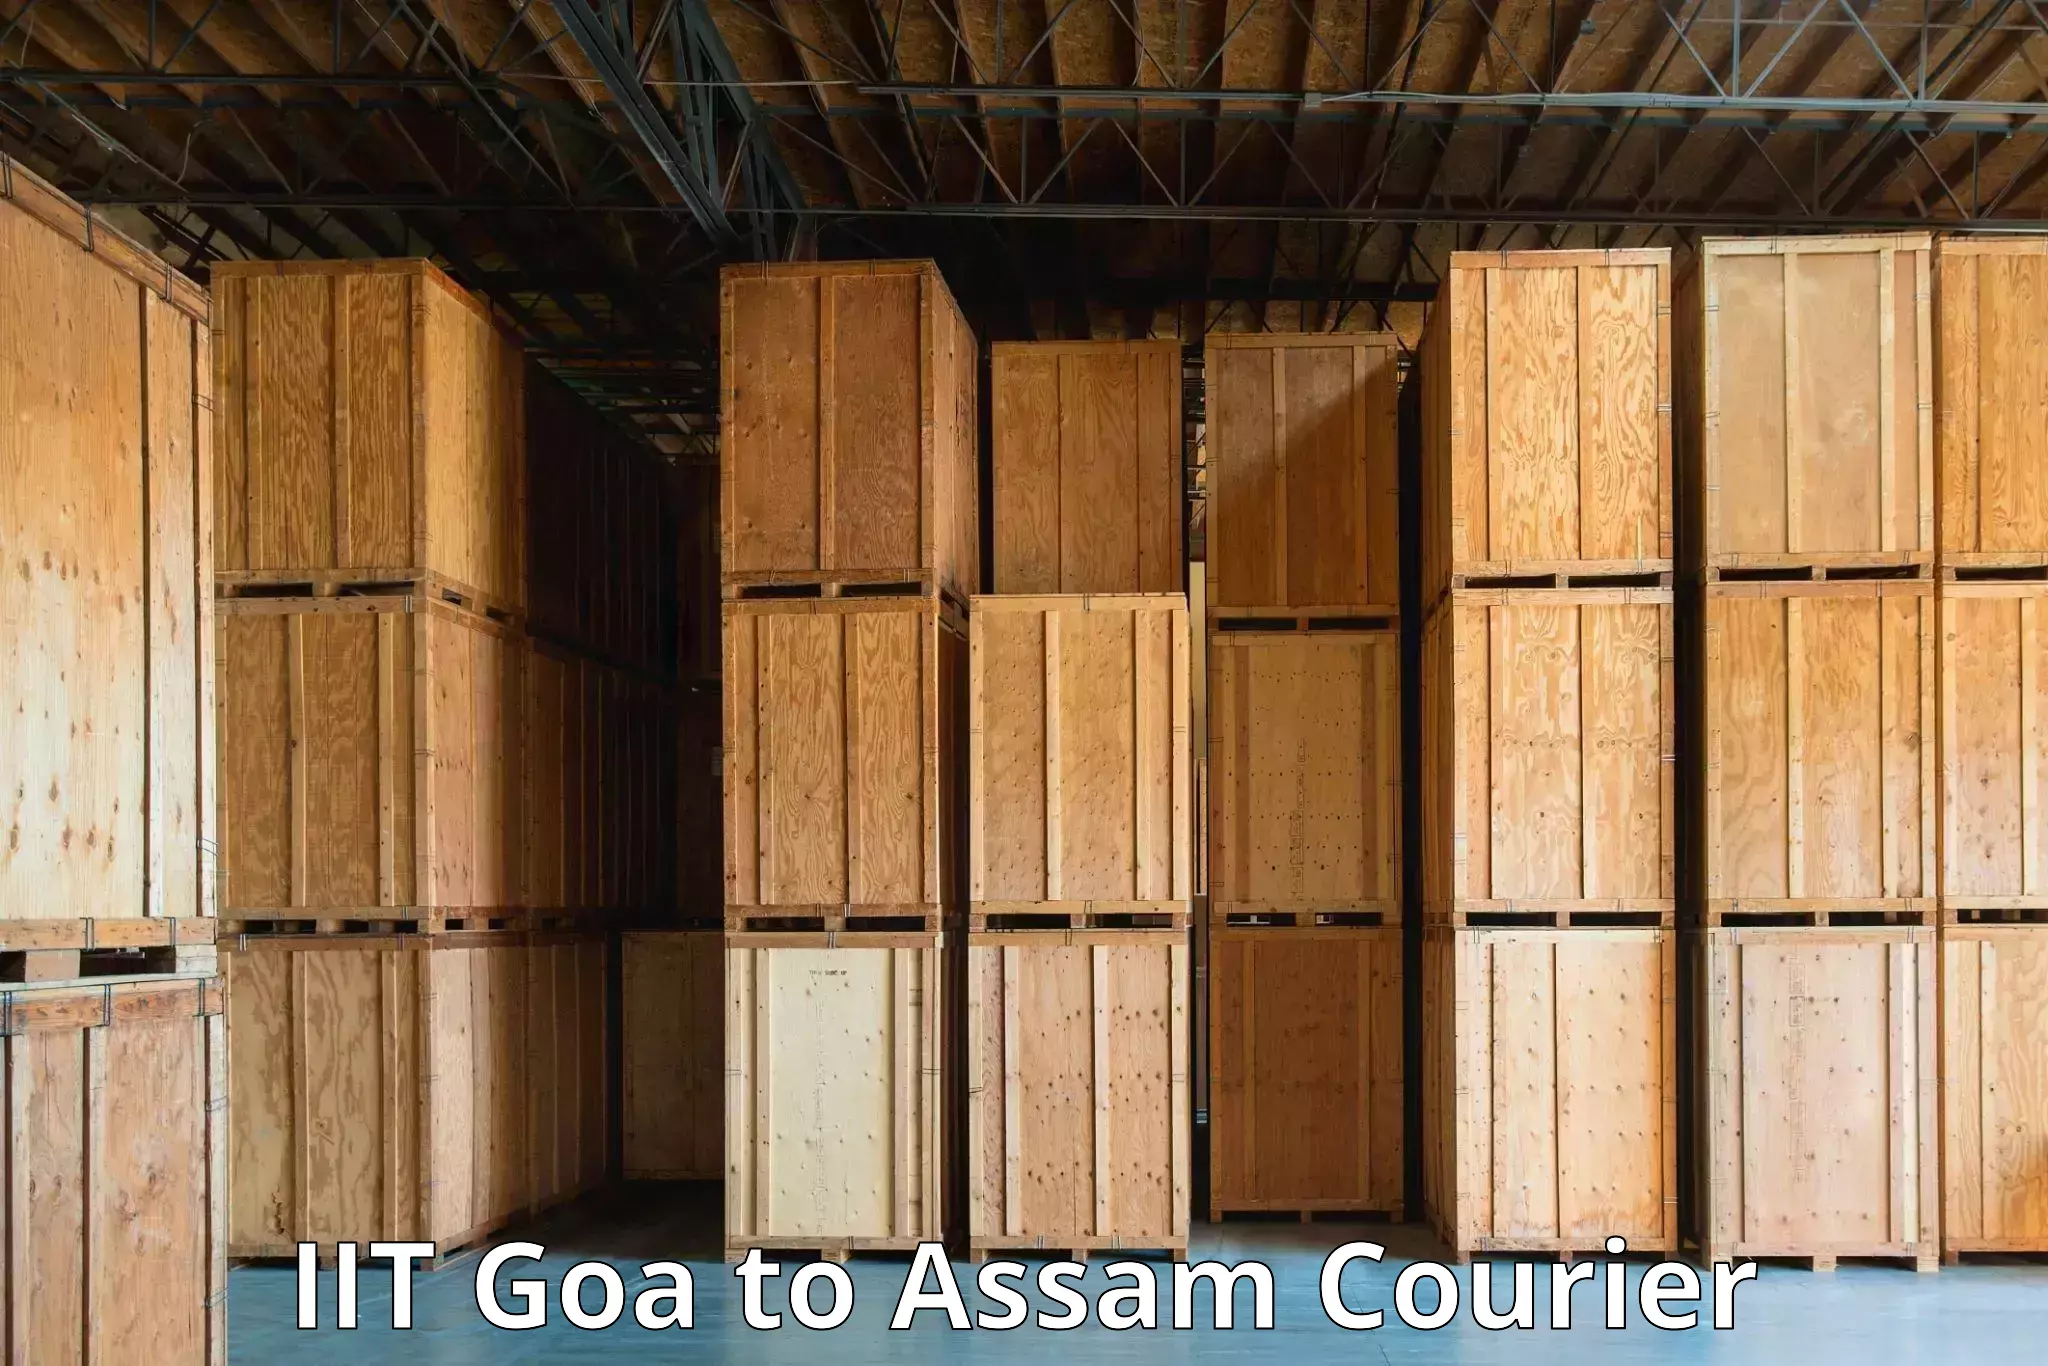 Urgent courier needs IIT Goa to Jonai